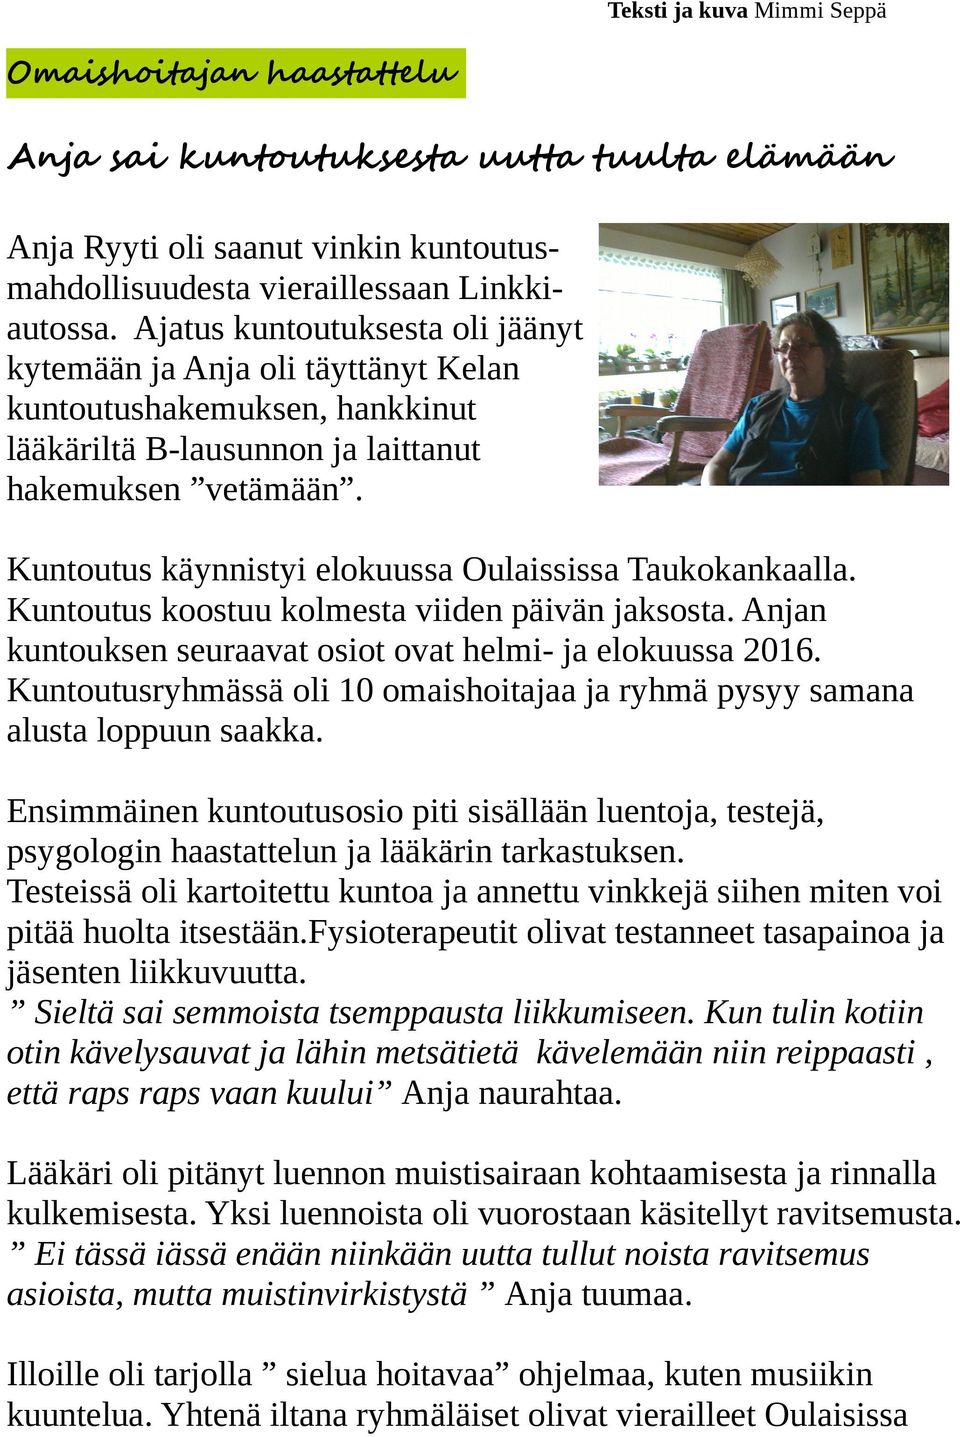 Kuntoutus käynnistyi elokuussa Oulaississa Taukokankaalla. Kuntoutus koostuu kolmesta viiden päivän jaksosta. Anjan kuntouksen seuraavat osiot ovat helmi- ja elokuussa 2016.